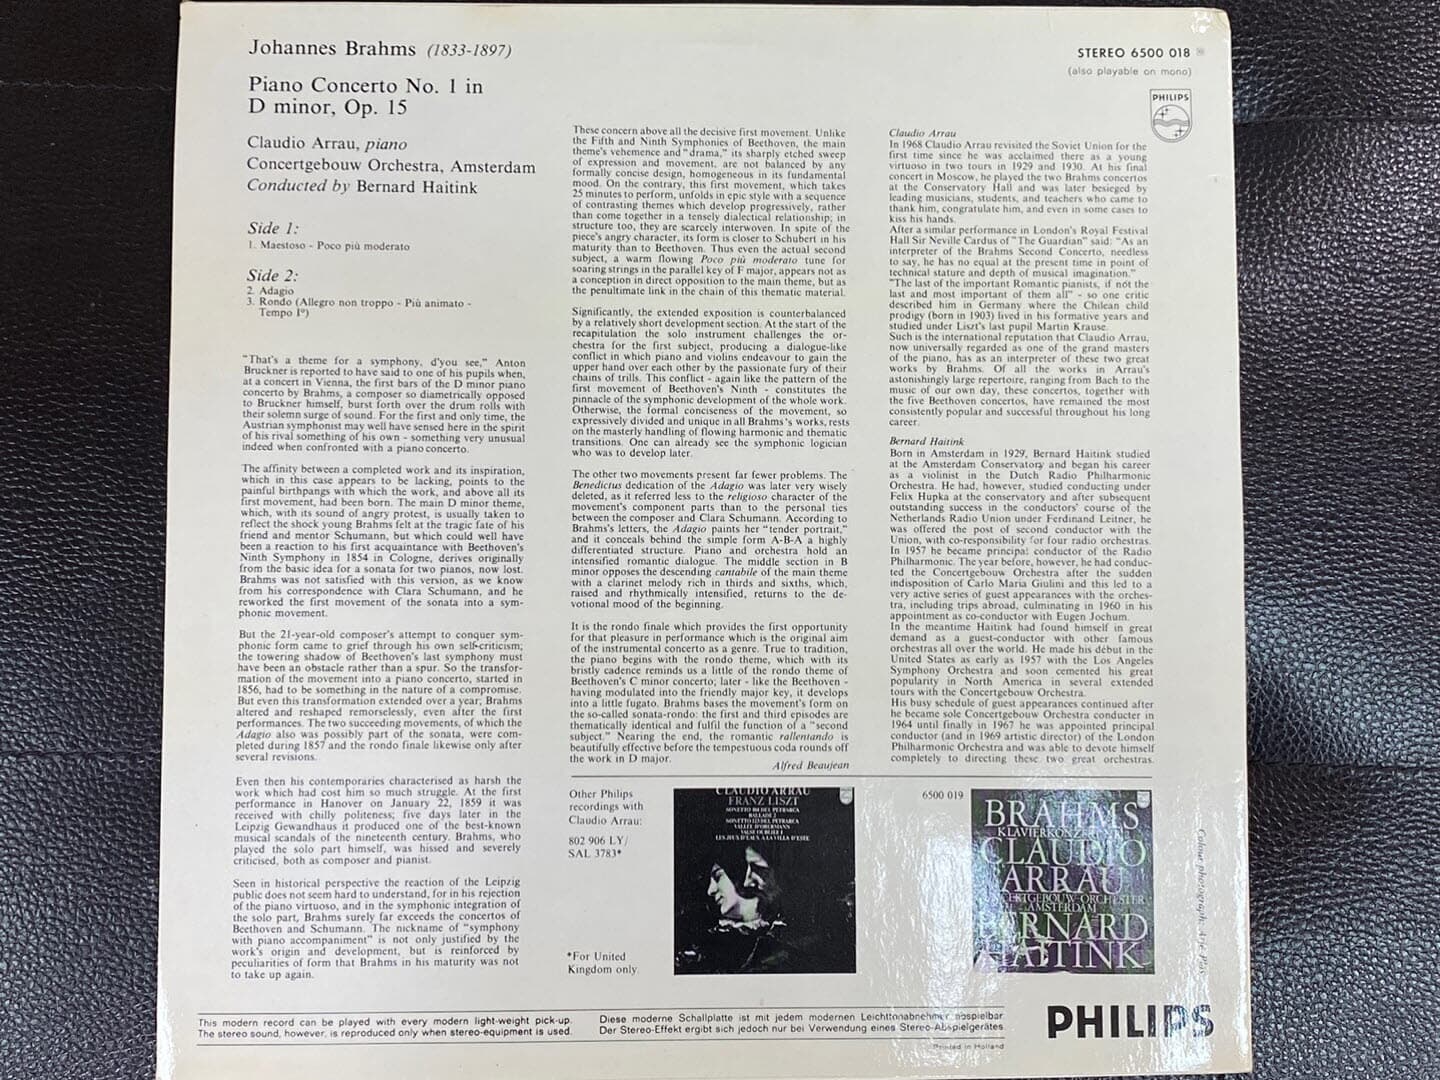 [LP] 클라우디아 아라우,베르나르트 하이팅크 - Claudio Arrau,Bernard Haitink - Brahms Piano Concerto No.1 LP [홀랜드반]